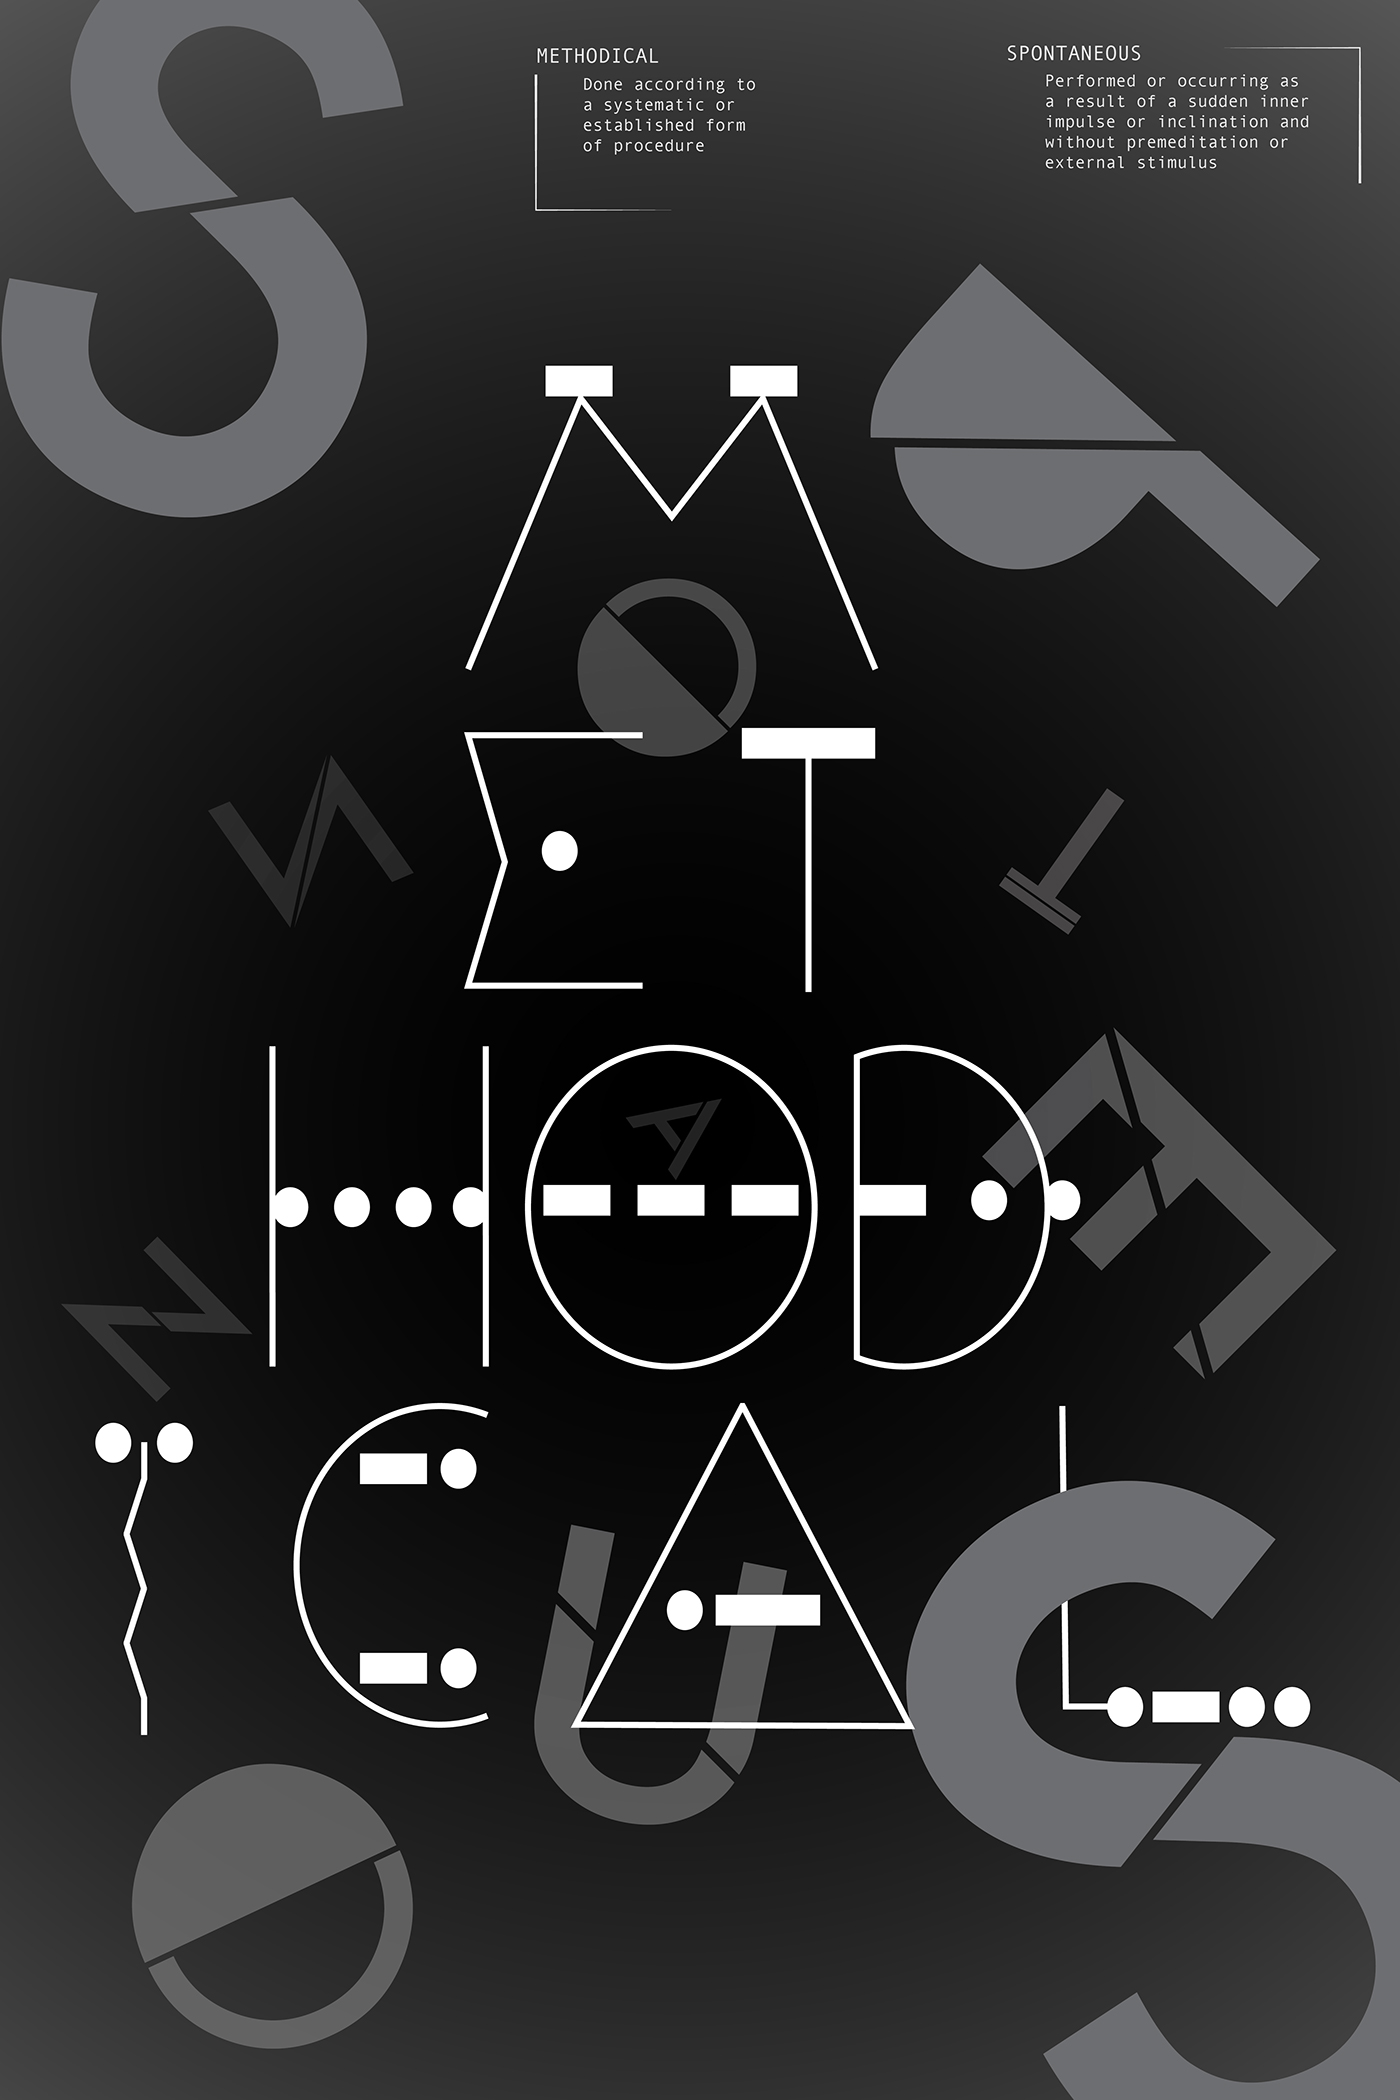 kaia forde Kaia Forde connotation denotation typography   Methodical spontaneous antonyms morse code